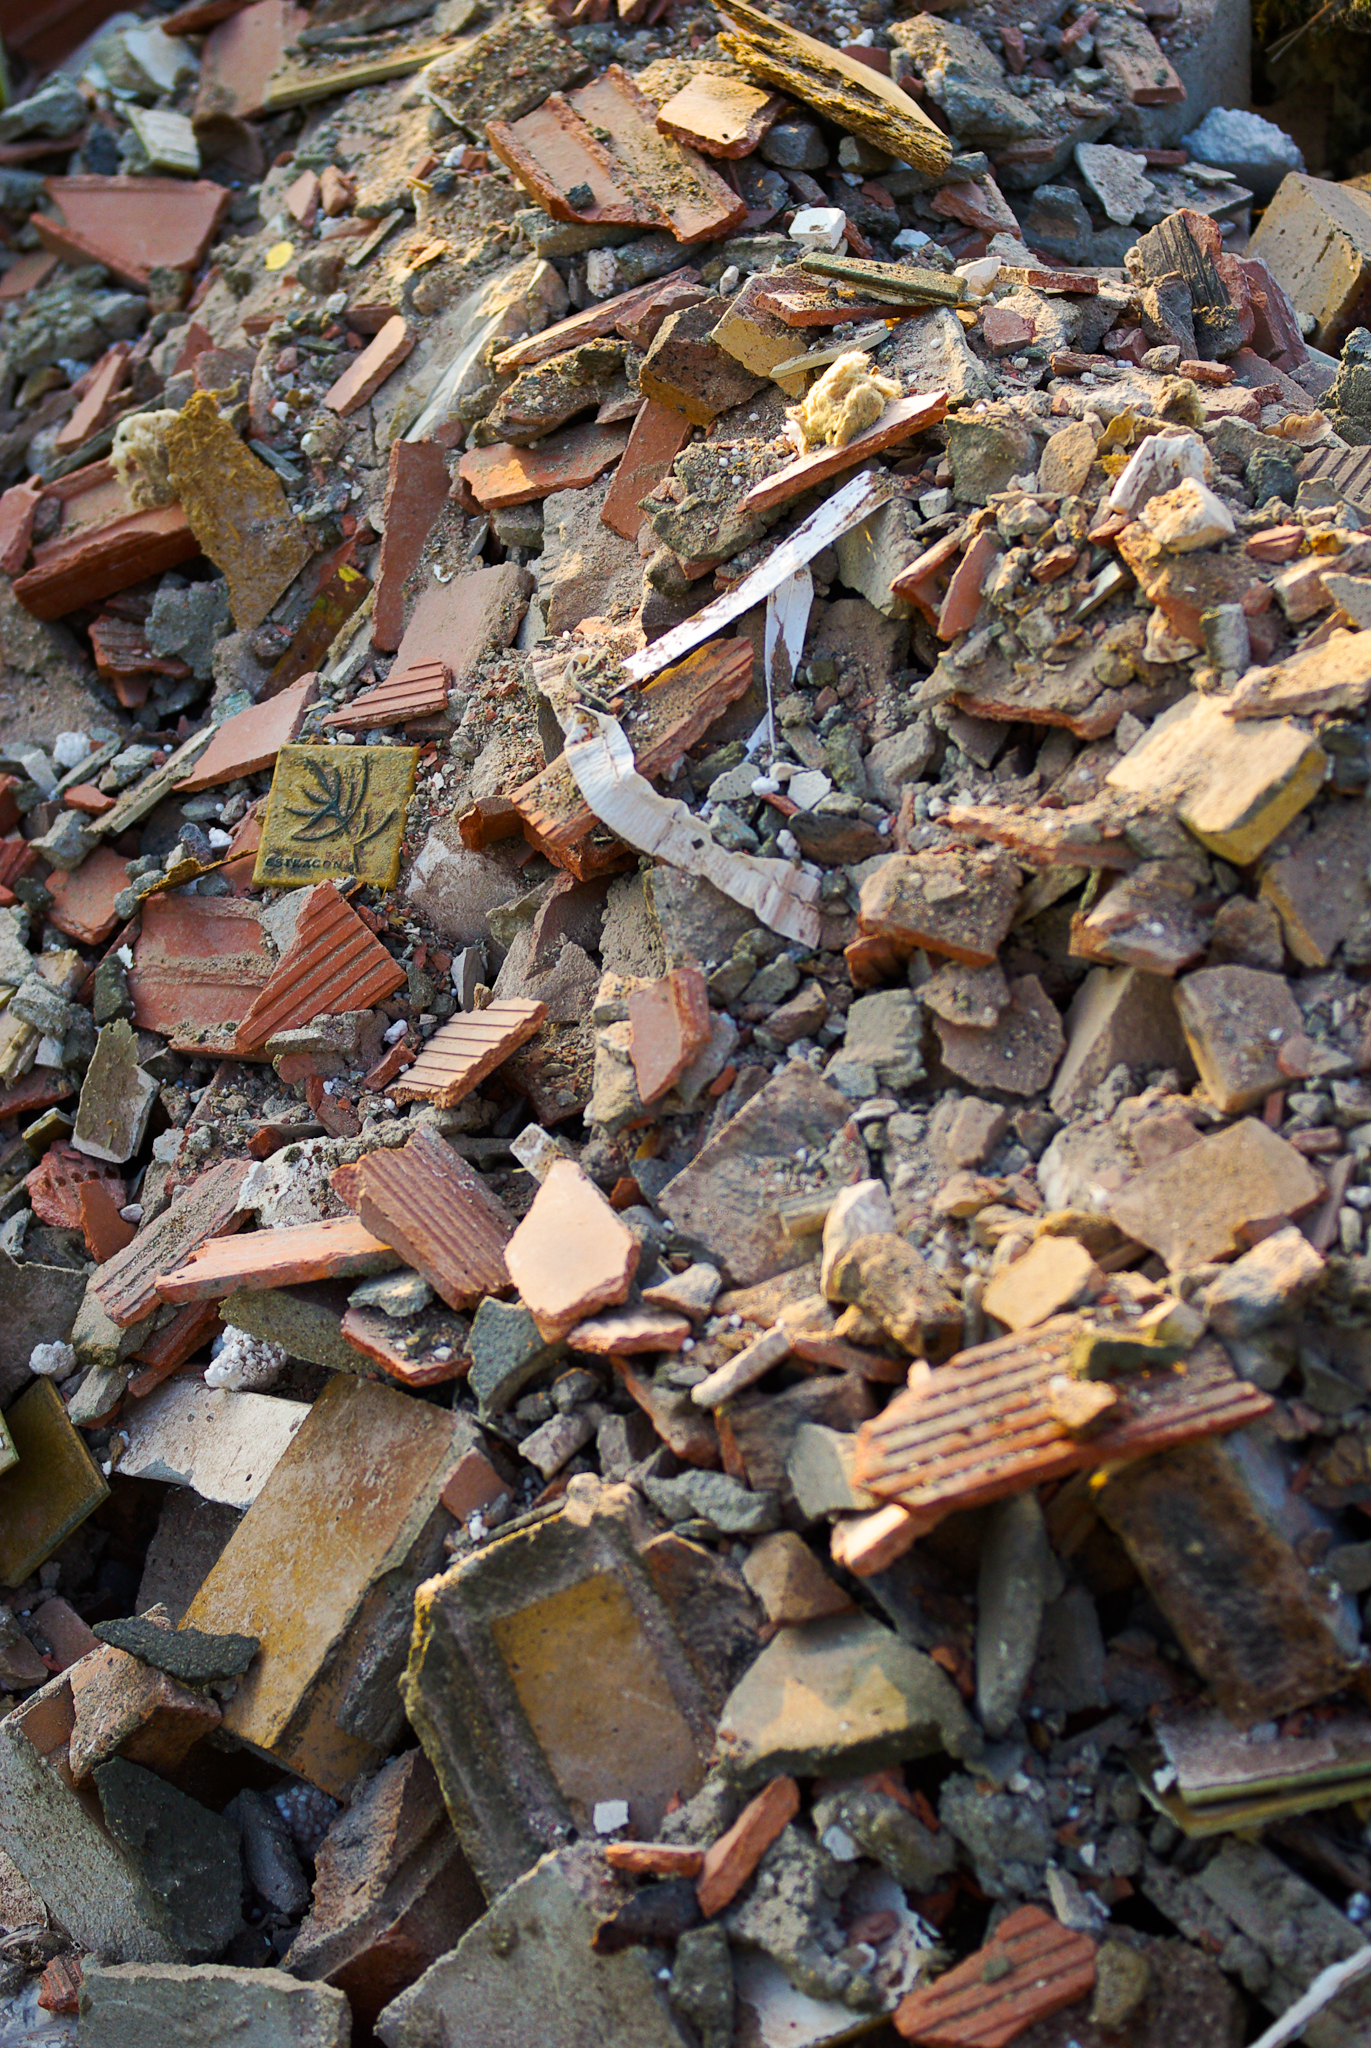 Les gravois issus de la démolition étaient autrefois réutilisés pour renforcer certaines constructions. © Phil, CC BY-NC-ND 2.0, Flickr